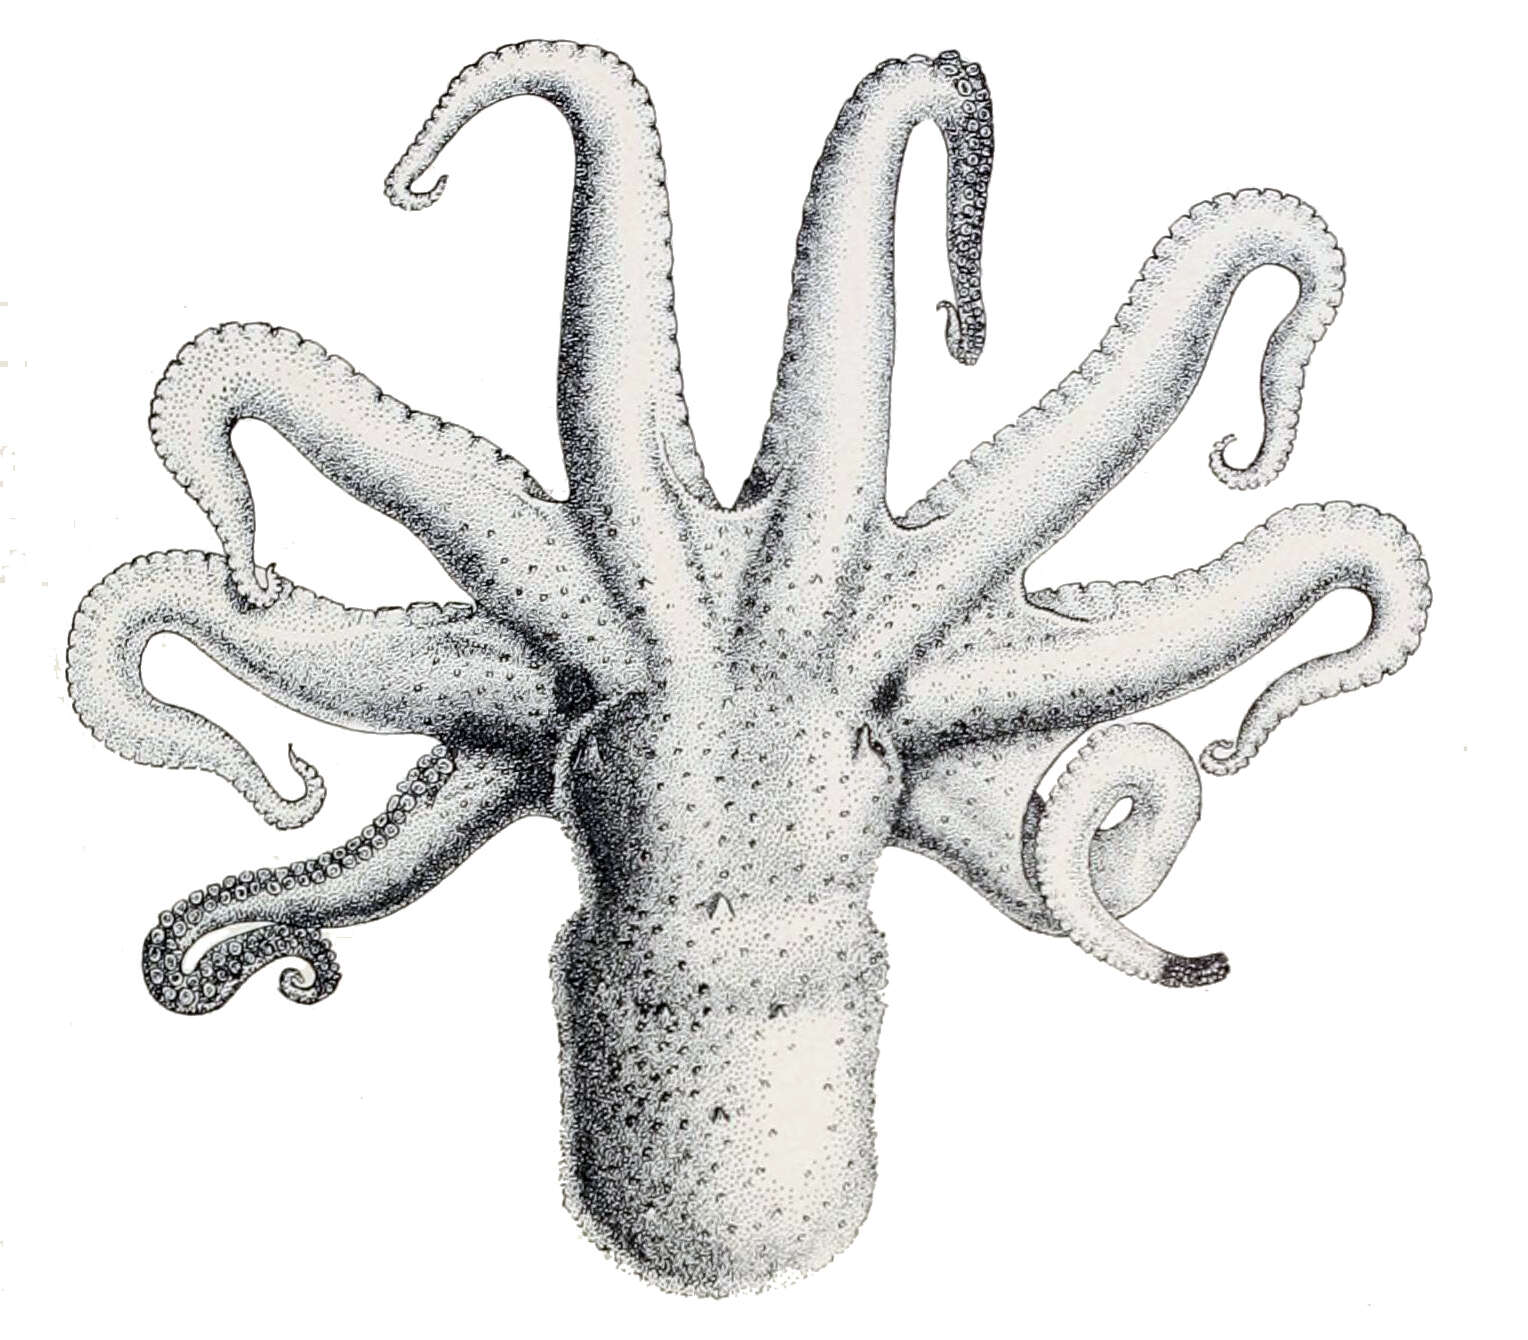 Image de Octopus bimaculatus Verrill 1883